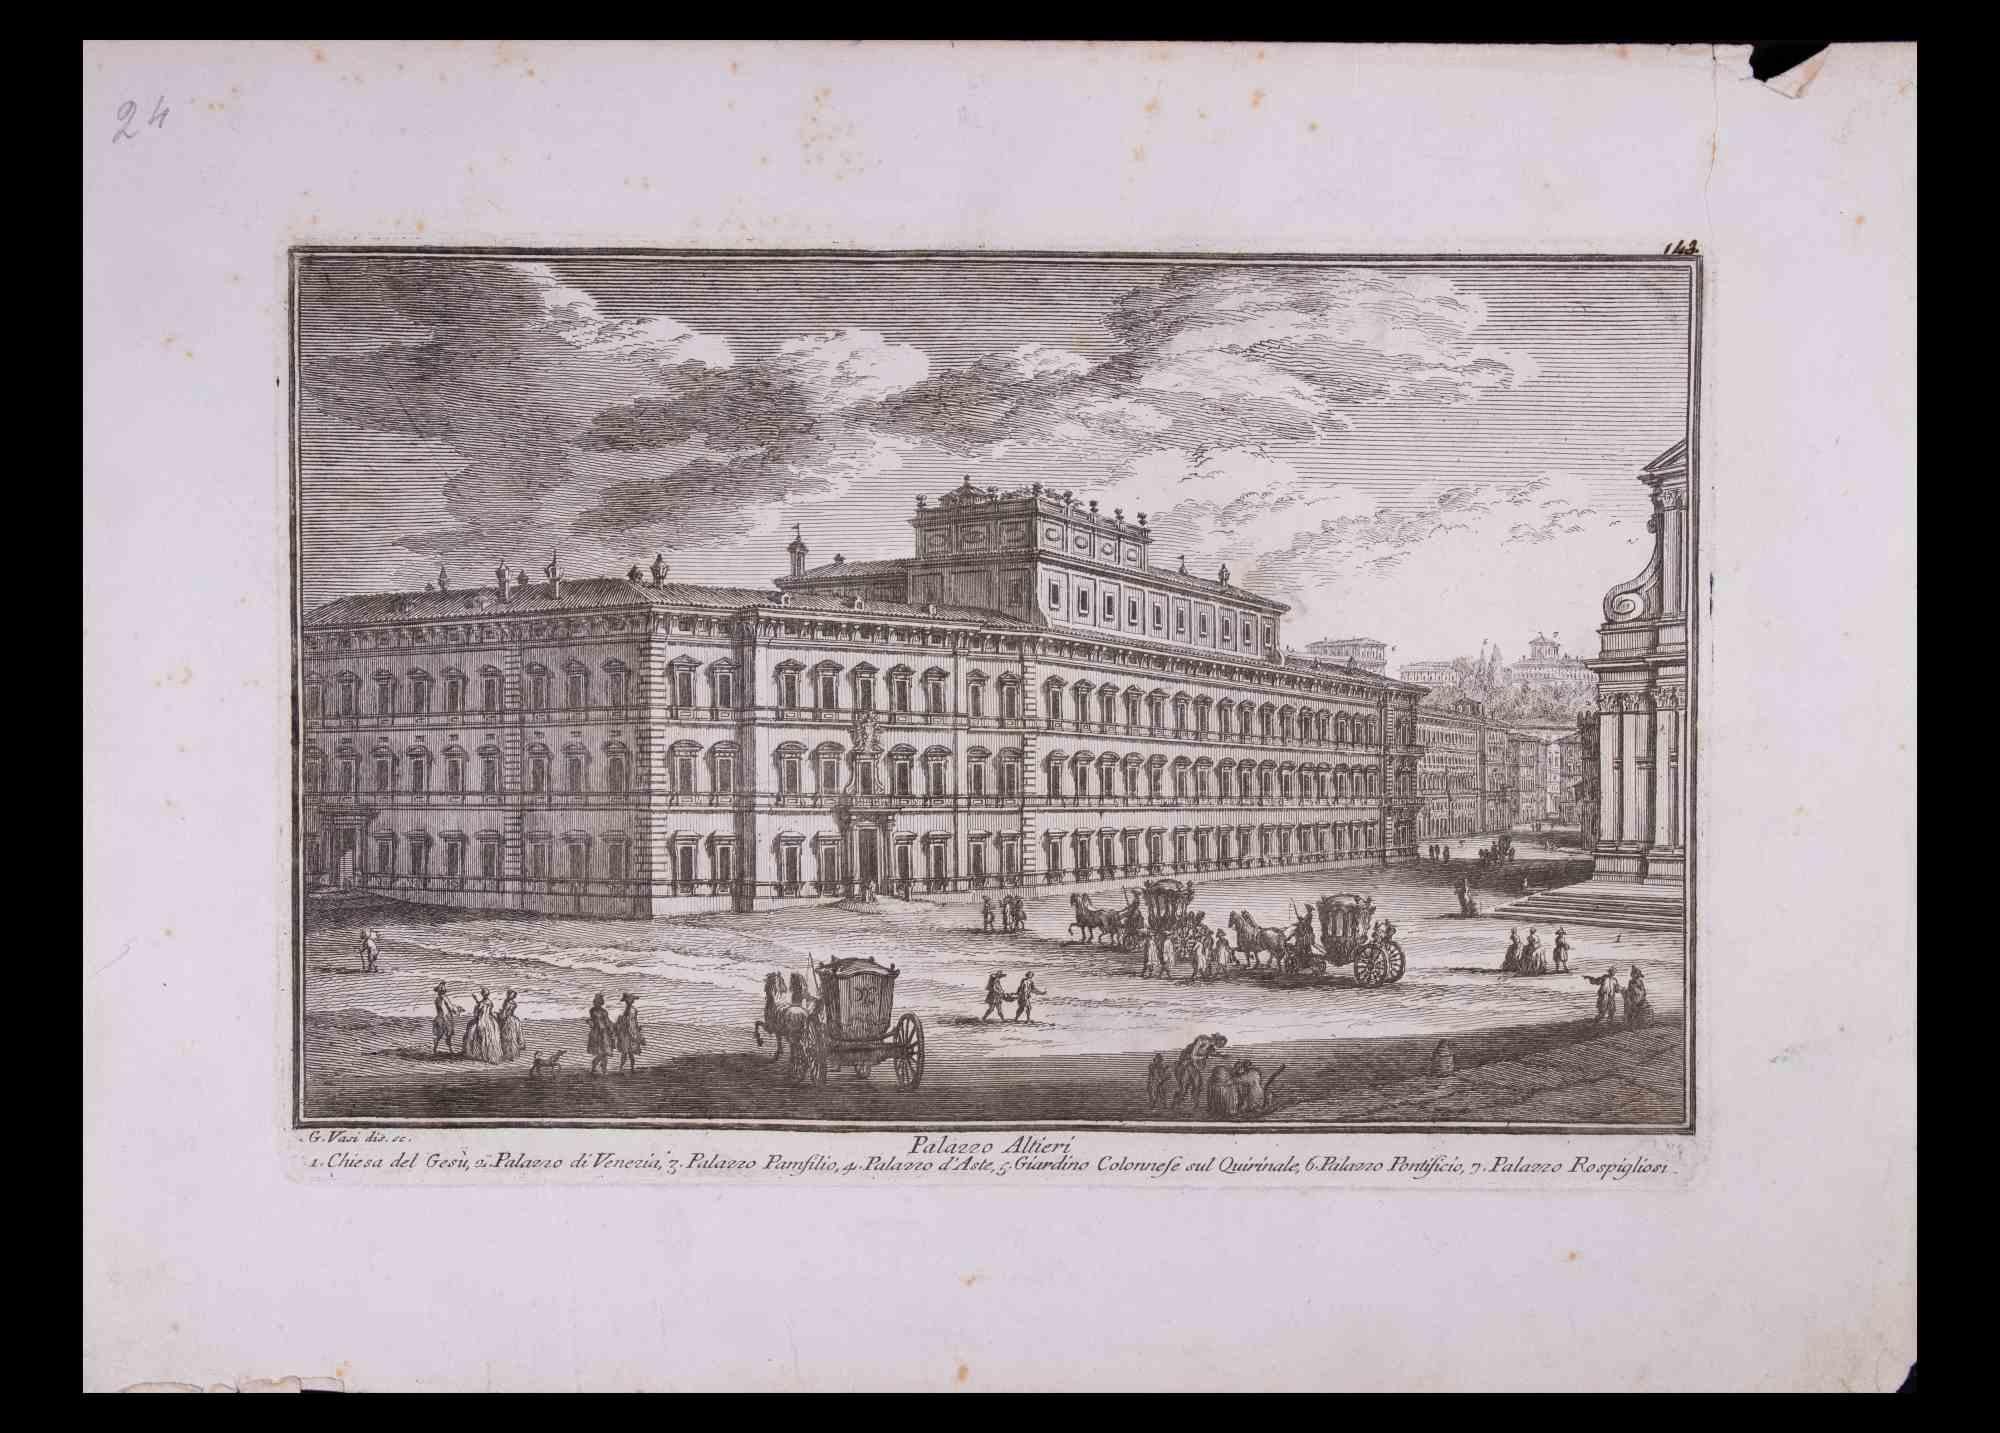 Palazzo Altieri ist eine Original-Schwarz-Weiß-Radierung aus dem späten 18. Jahrhundert von Giuseppe Vasi.

Signiert und betitelt am unteren Rand der Platte. 

Ziemlich guter Zustand und gealterte Ränder mit einigen Rissen und